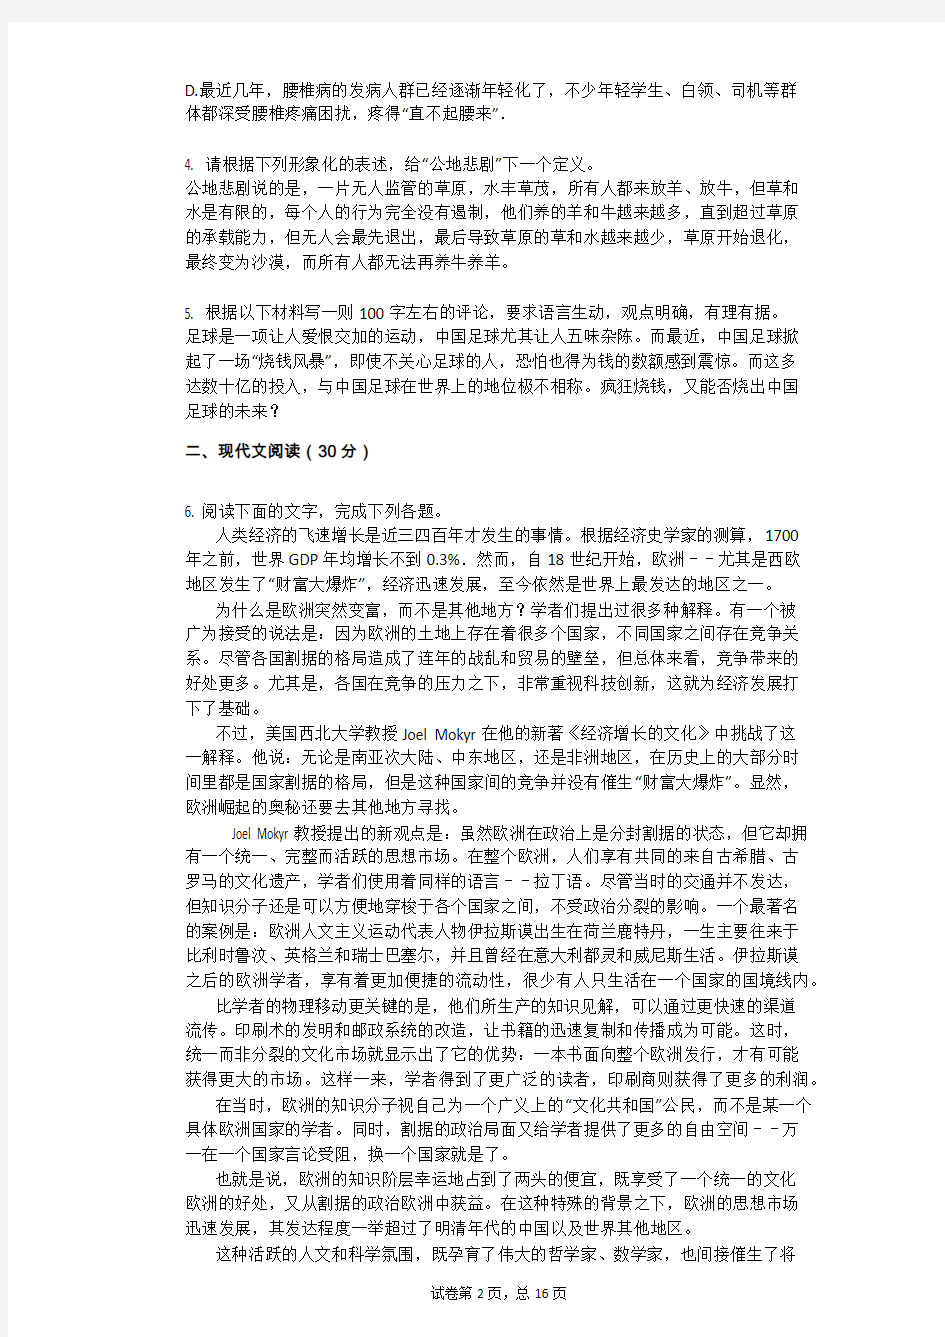 2017年浙江省高考语文模拟试卷